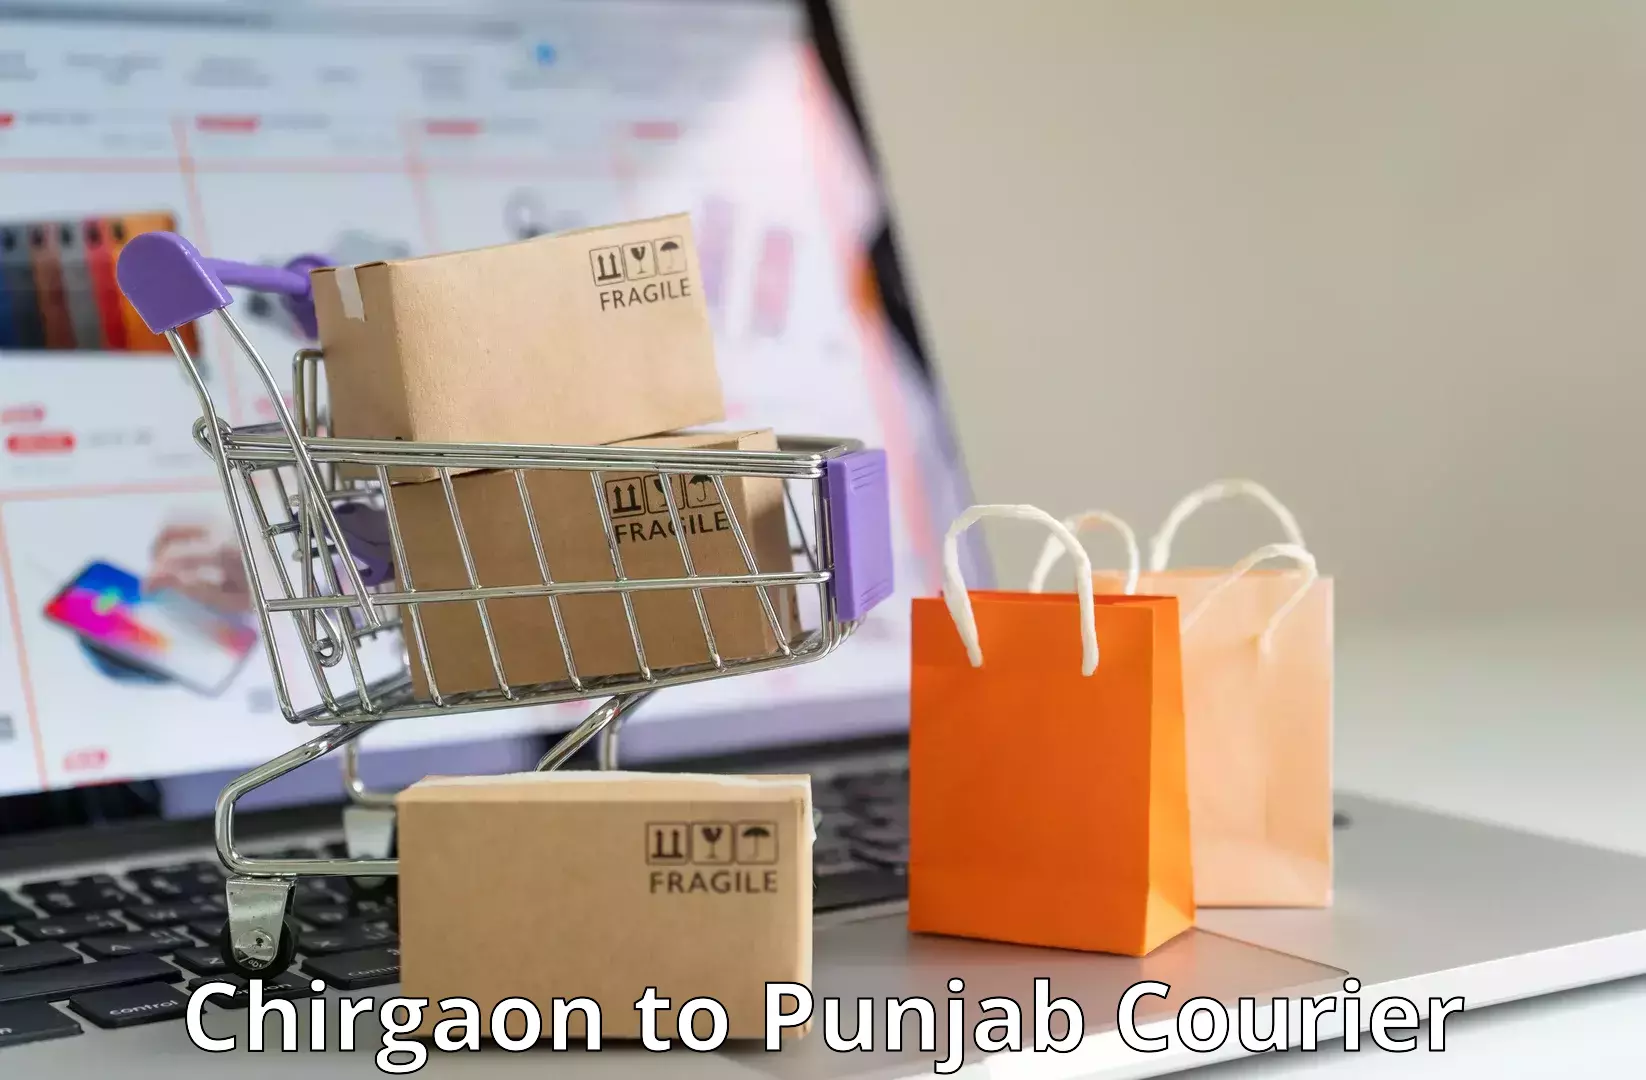 Express package transport Chirgaon to Punjab